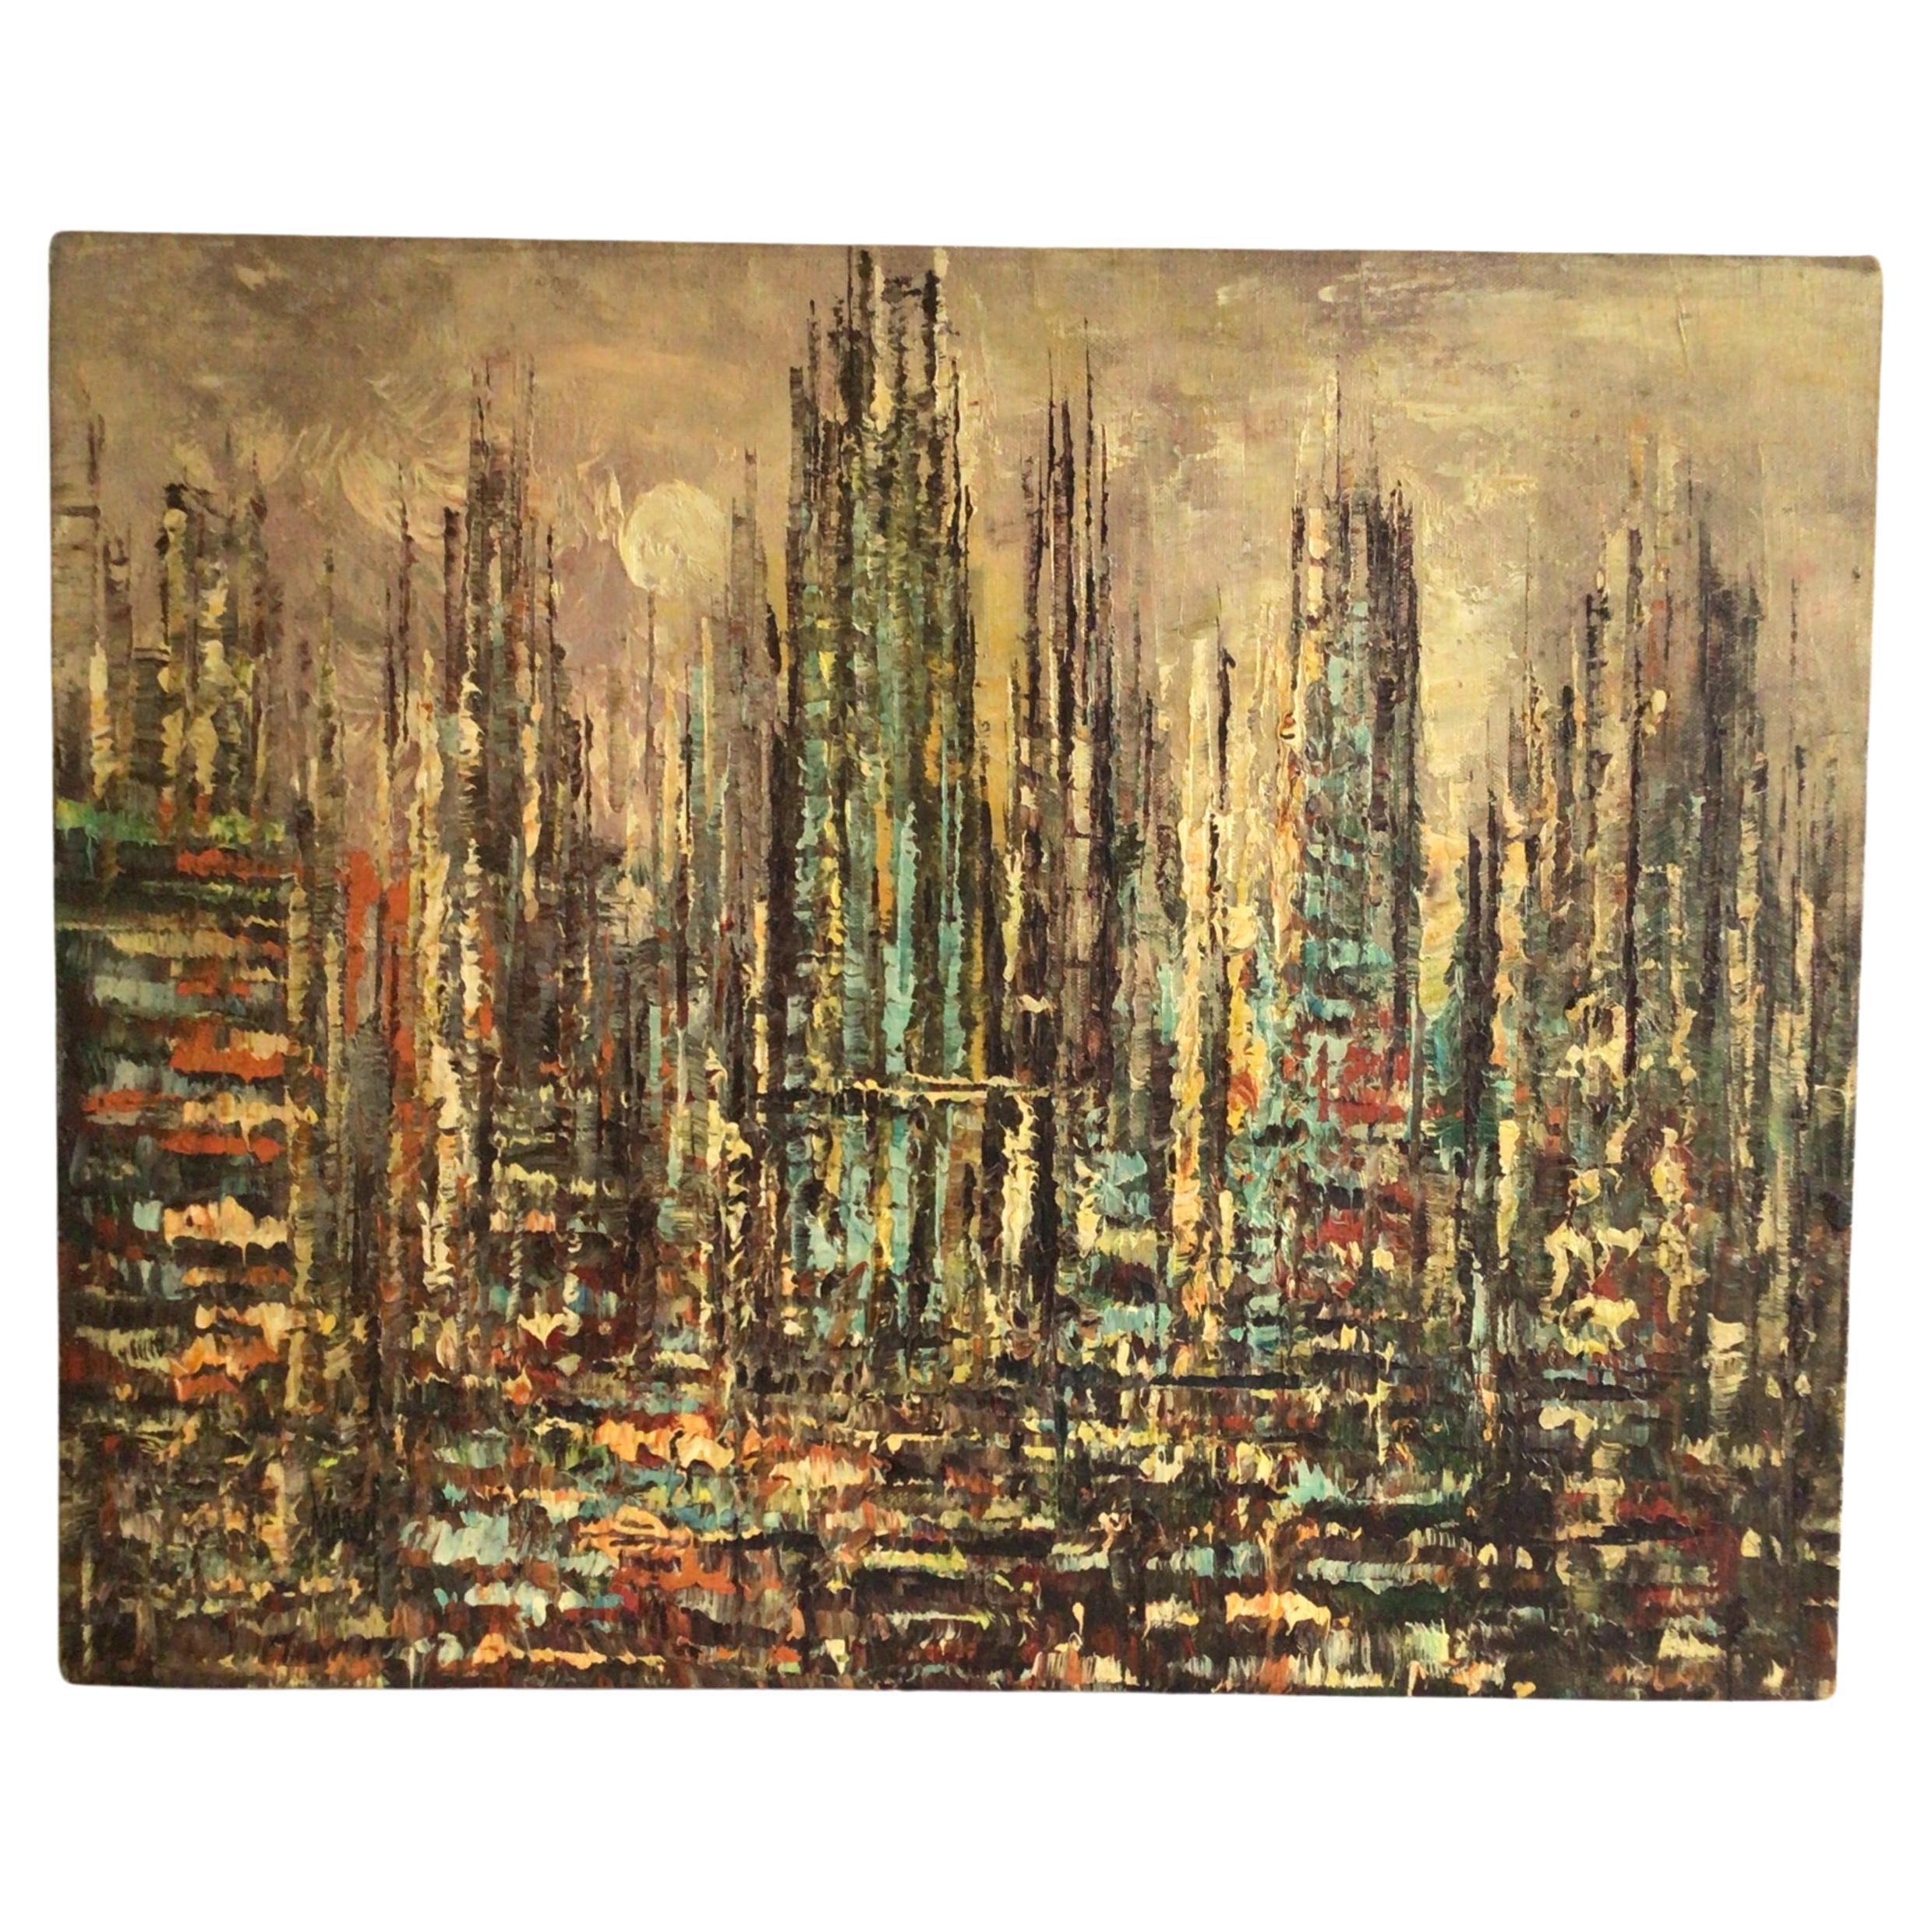 Pintura al óleo sobre lienzo de los años 50 de un paisaje urbano abstracto